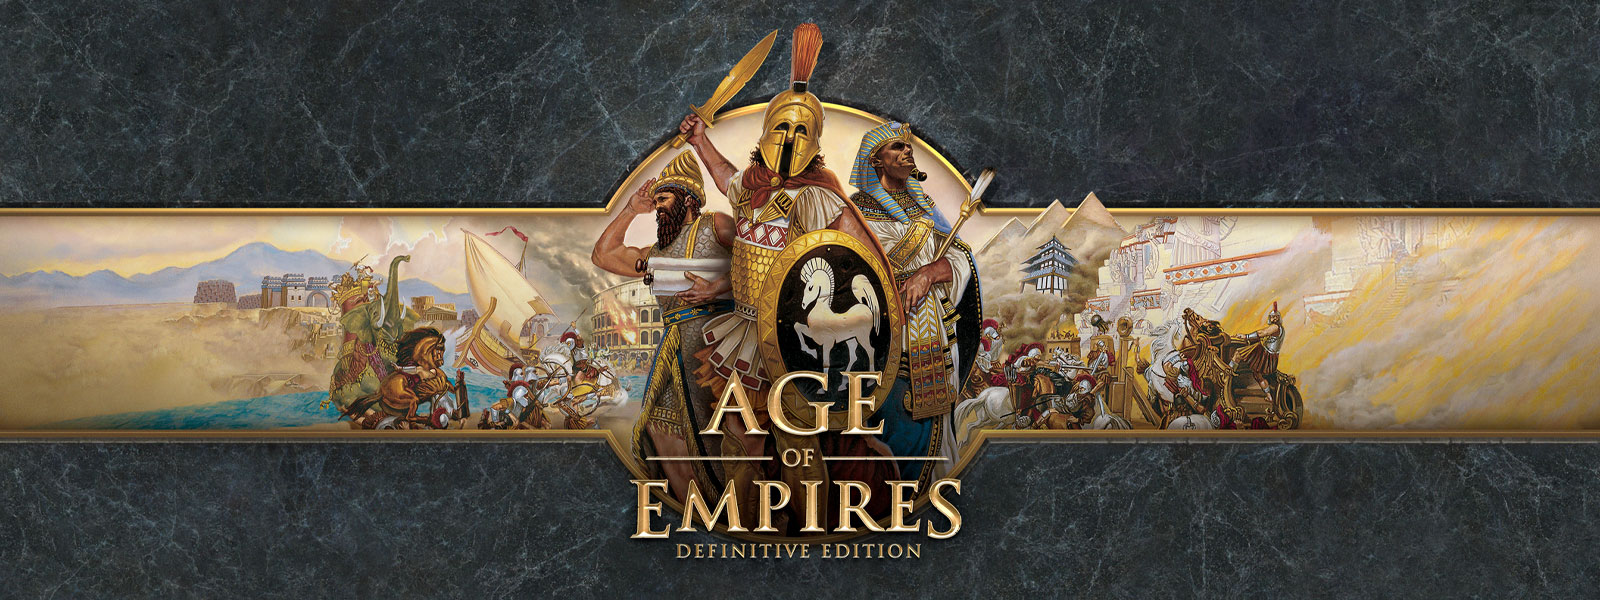 Age of Empires: Definitive Edition-Logo vor grauem Schiefer mit Kriegsführern und ihren Armeen